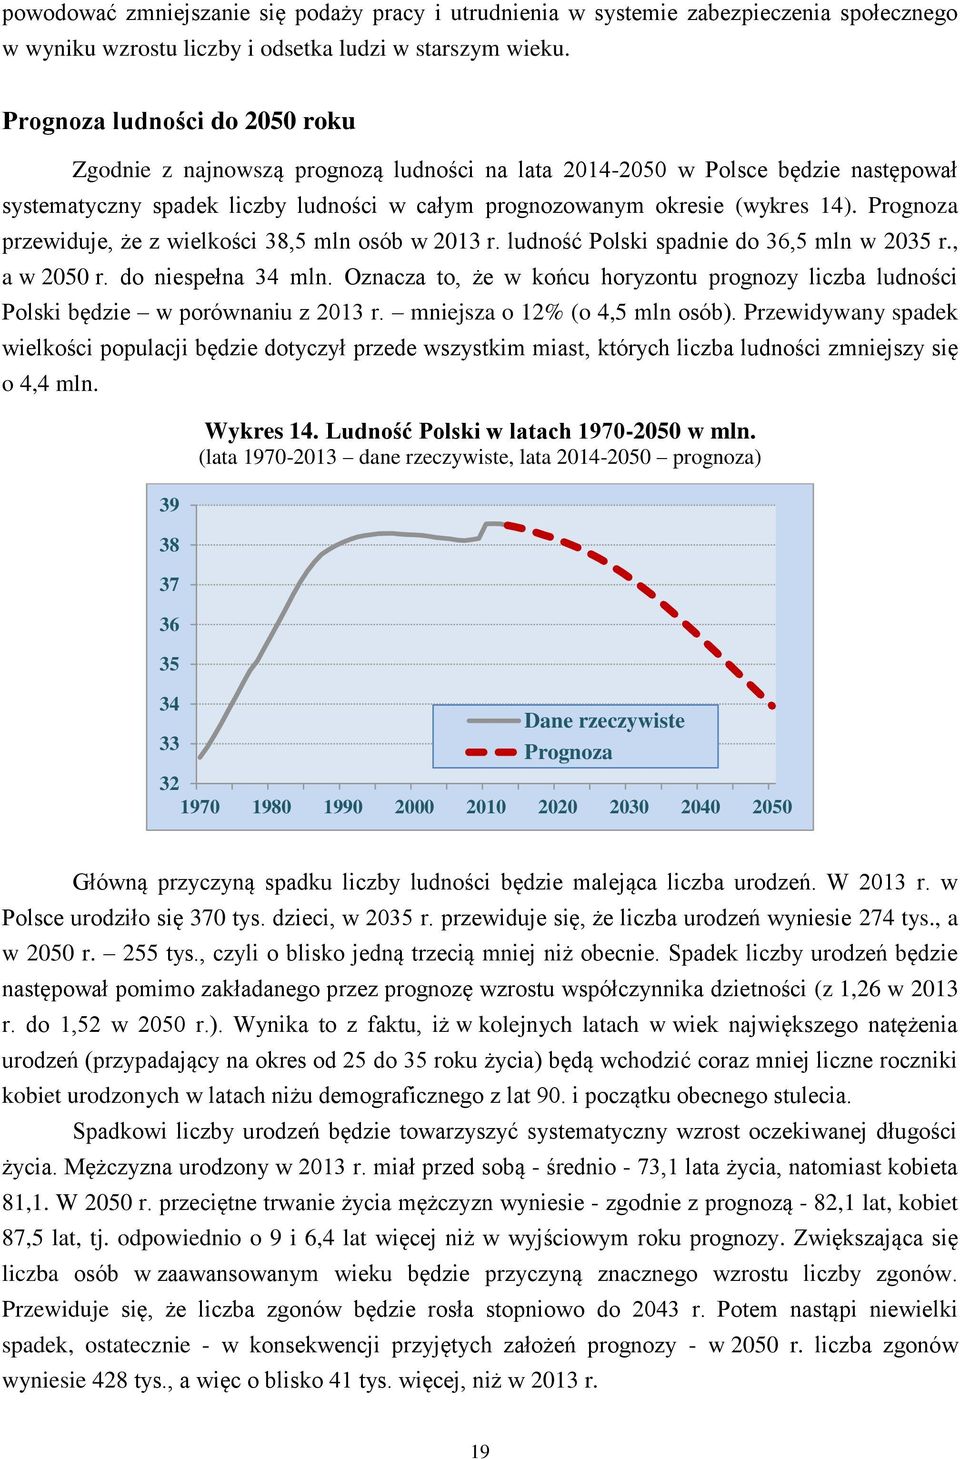 Prognoza przewiduje, że z wielkości 38,5 mln osób w 2013 r. ludność Polski spadnie do 36,5 mln w 2035 r., a w 2050 r. do niespełna 34 mln.